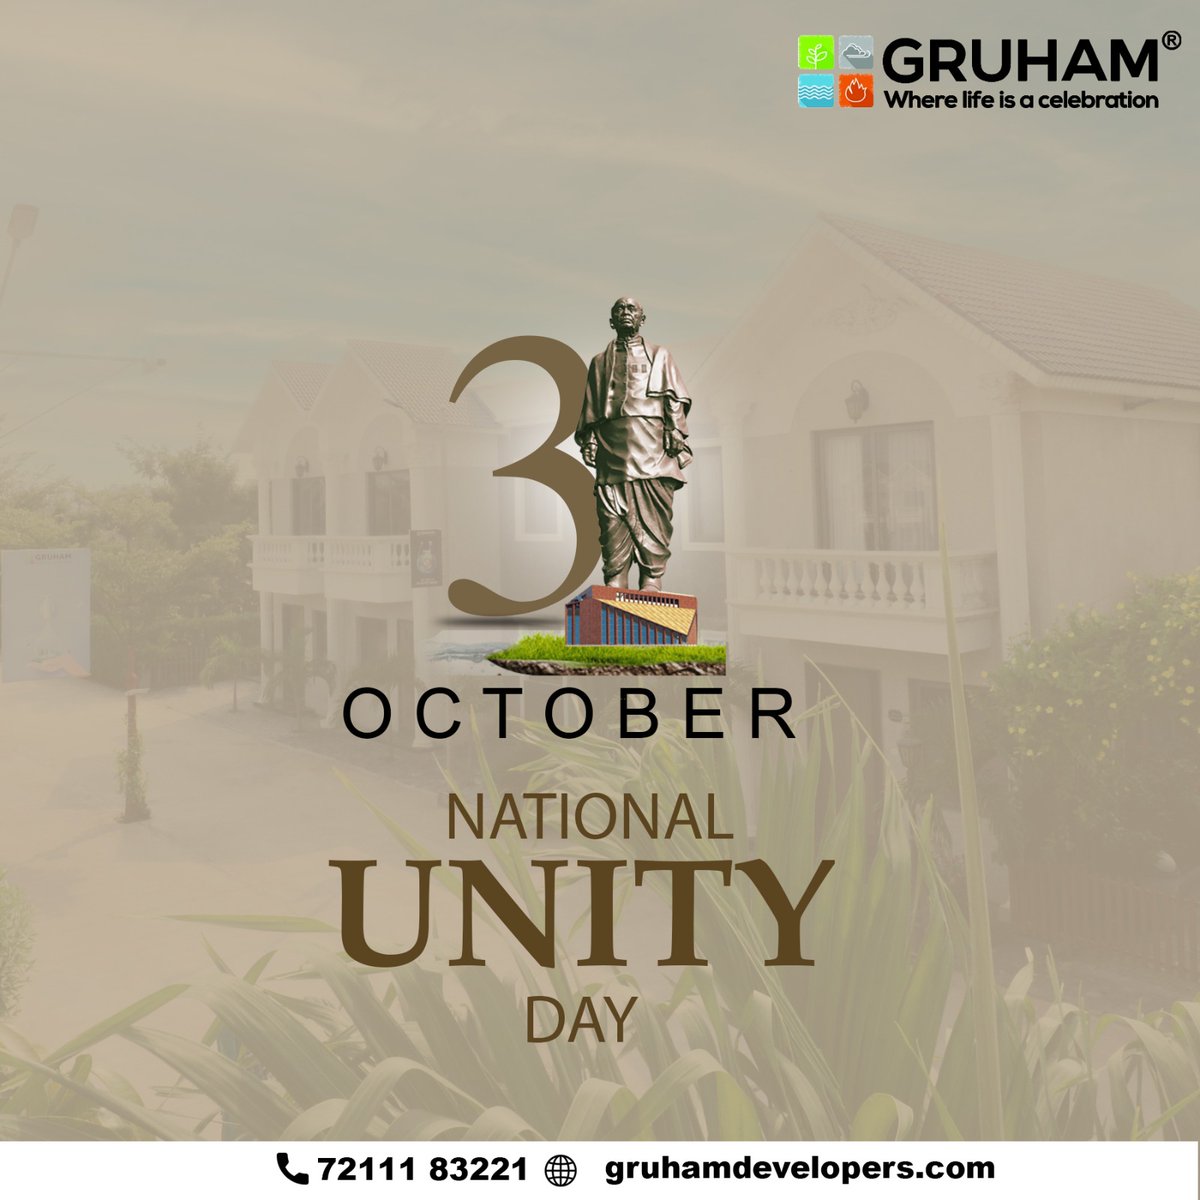 Architect of Unity: Gruham Developers honors the legacy of Sardar Vallabhbhai Patel on his Jayanti

#GruhamDevelopers #Gruham #SardarPatelJayanti #IronManOfIndia #StatueOfUnity #UnityDay  #IndiaUnite #BharatRatnaSardarPatel #PatelLegacy #LeaderOfUnity #RoleModel